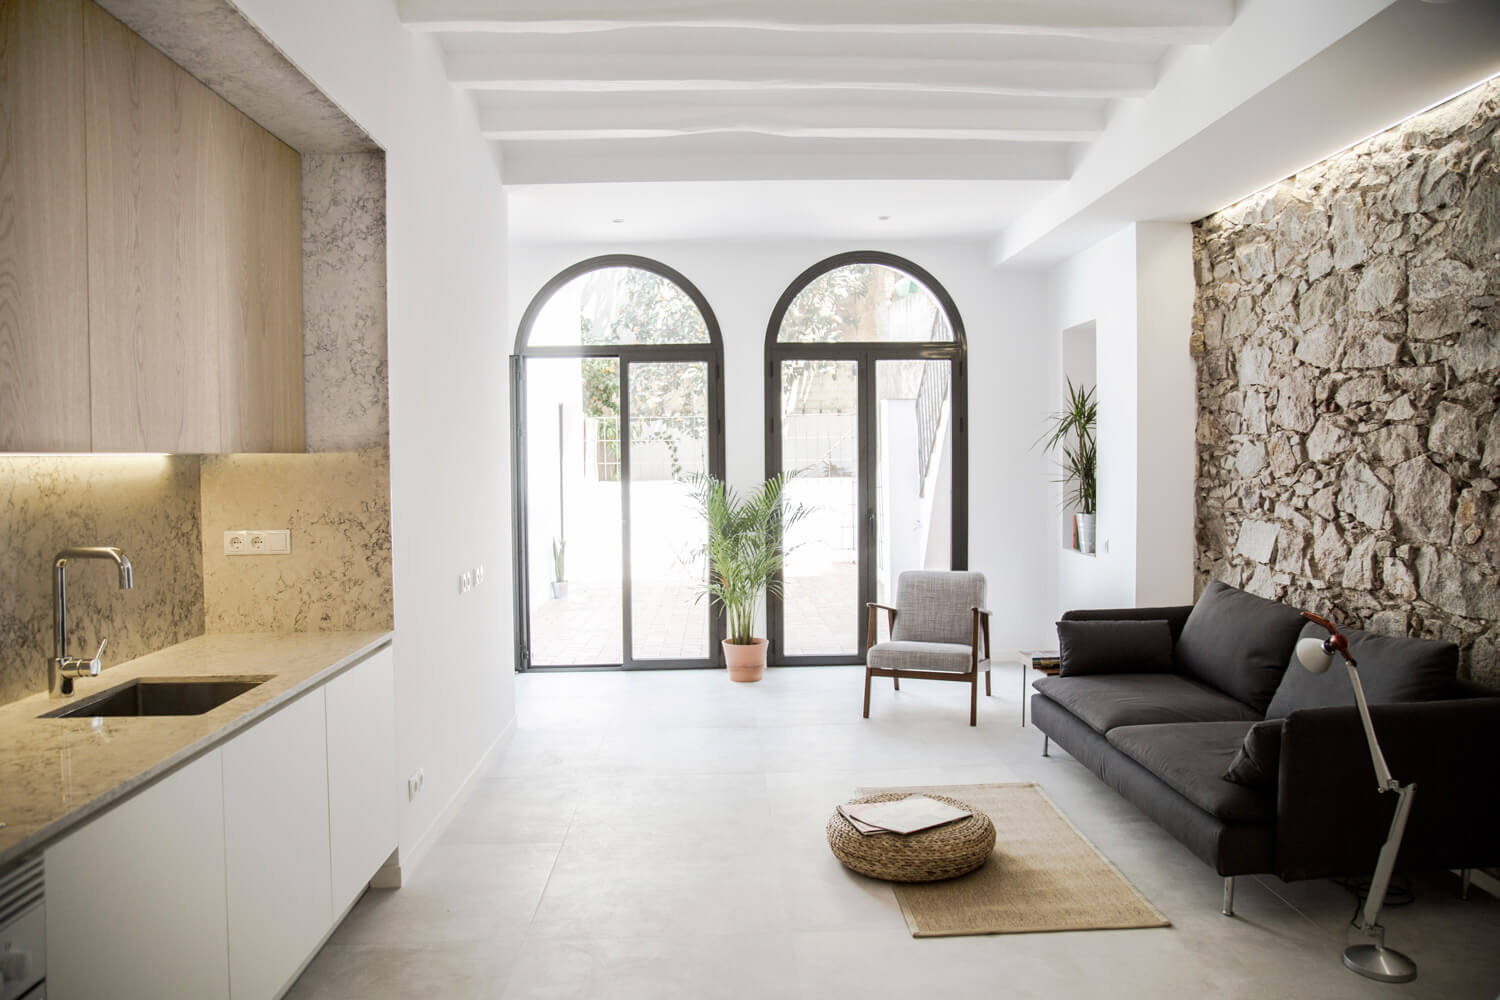 Casa reformada, Estilo Retrofit em Barcelona por RÄS studio 002 Cozinha + Parede de Pedra + Sofá